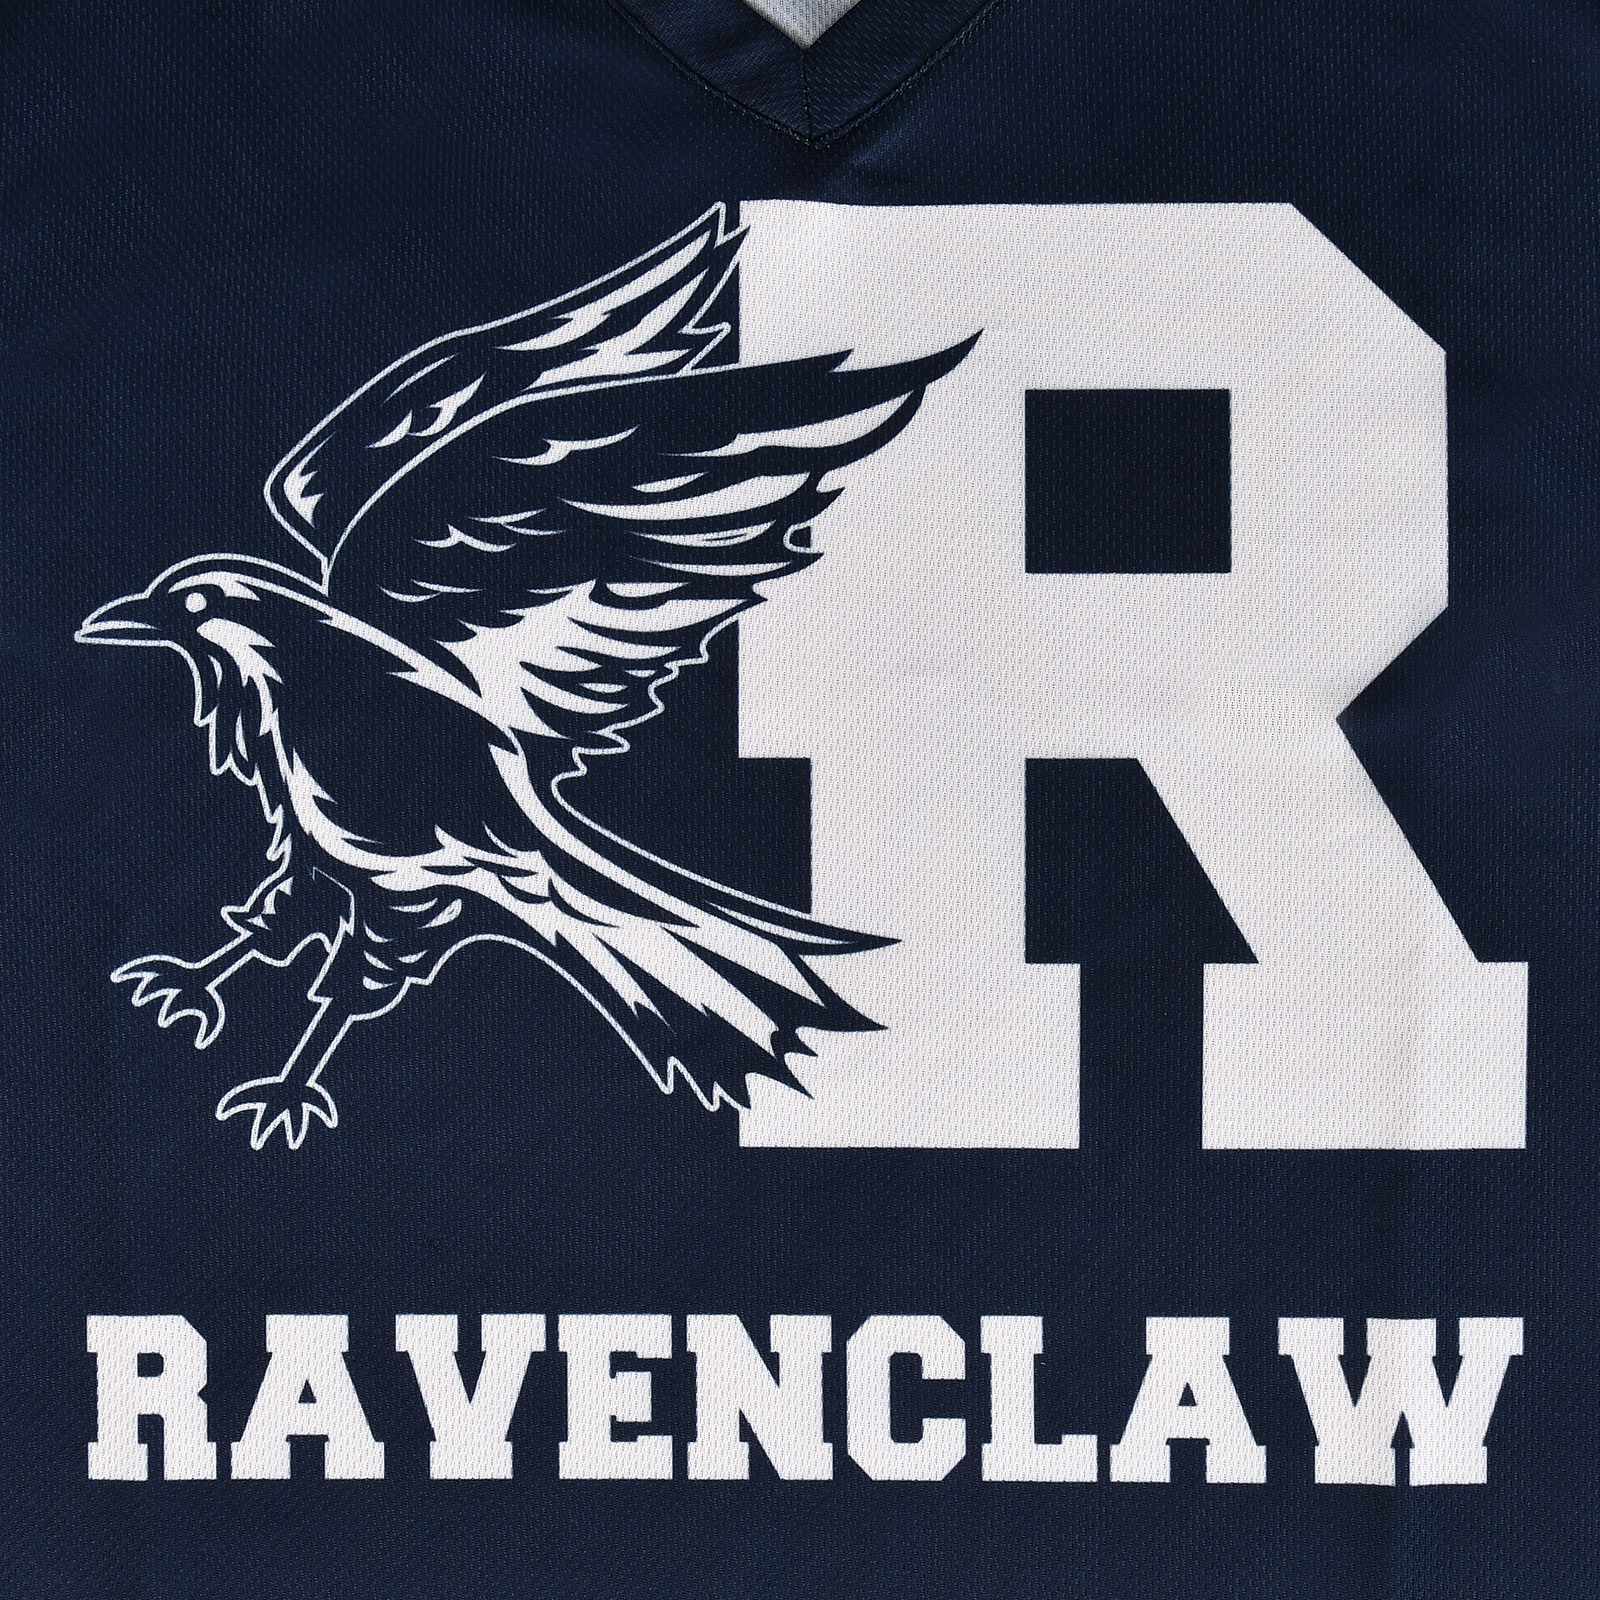 Harry Potter - T-shirt bleu de l'équipe Ravenclaw